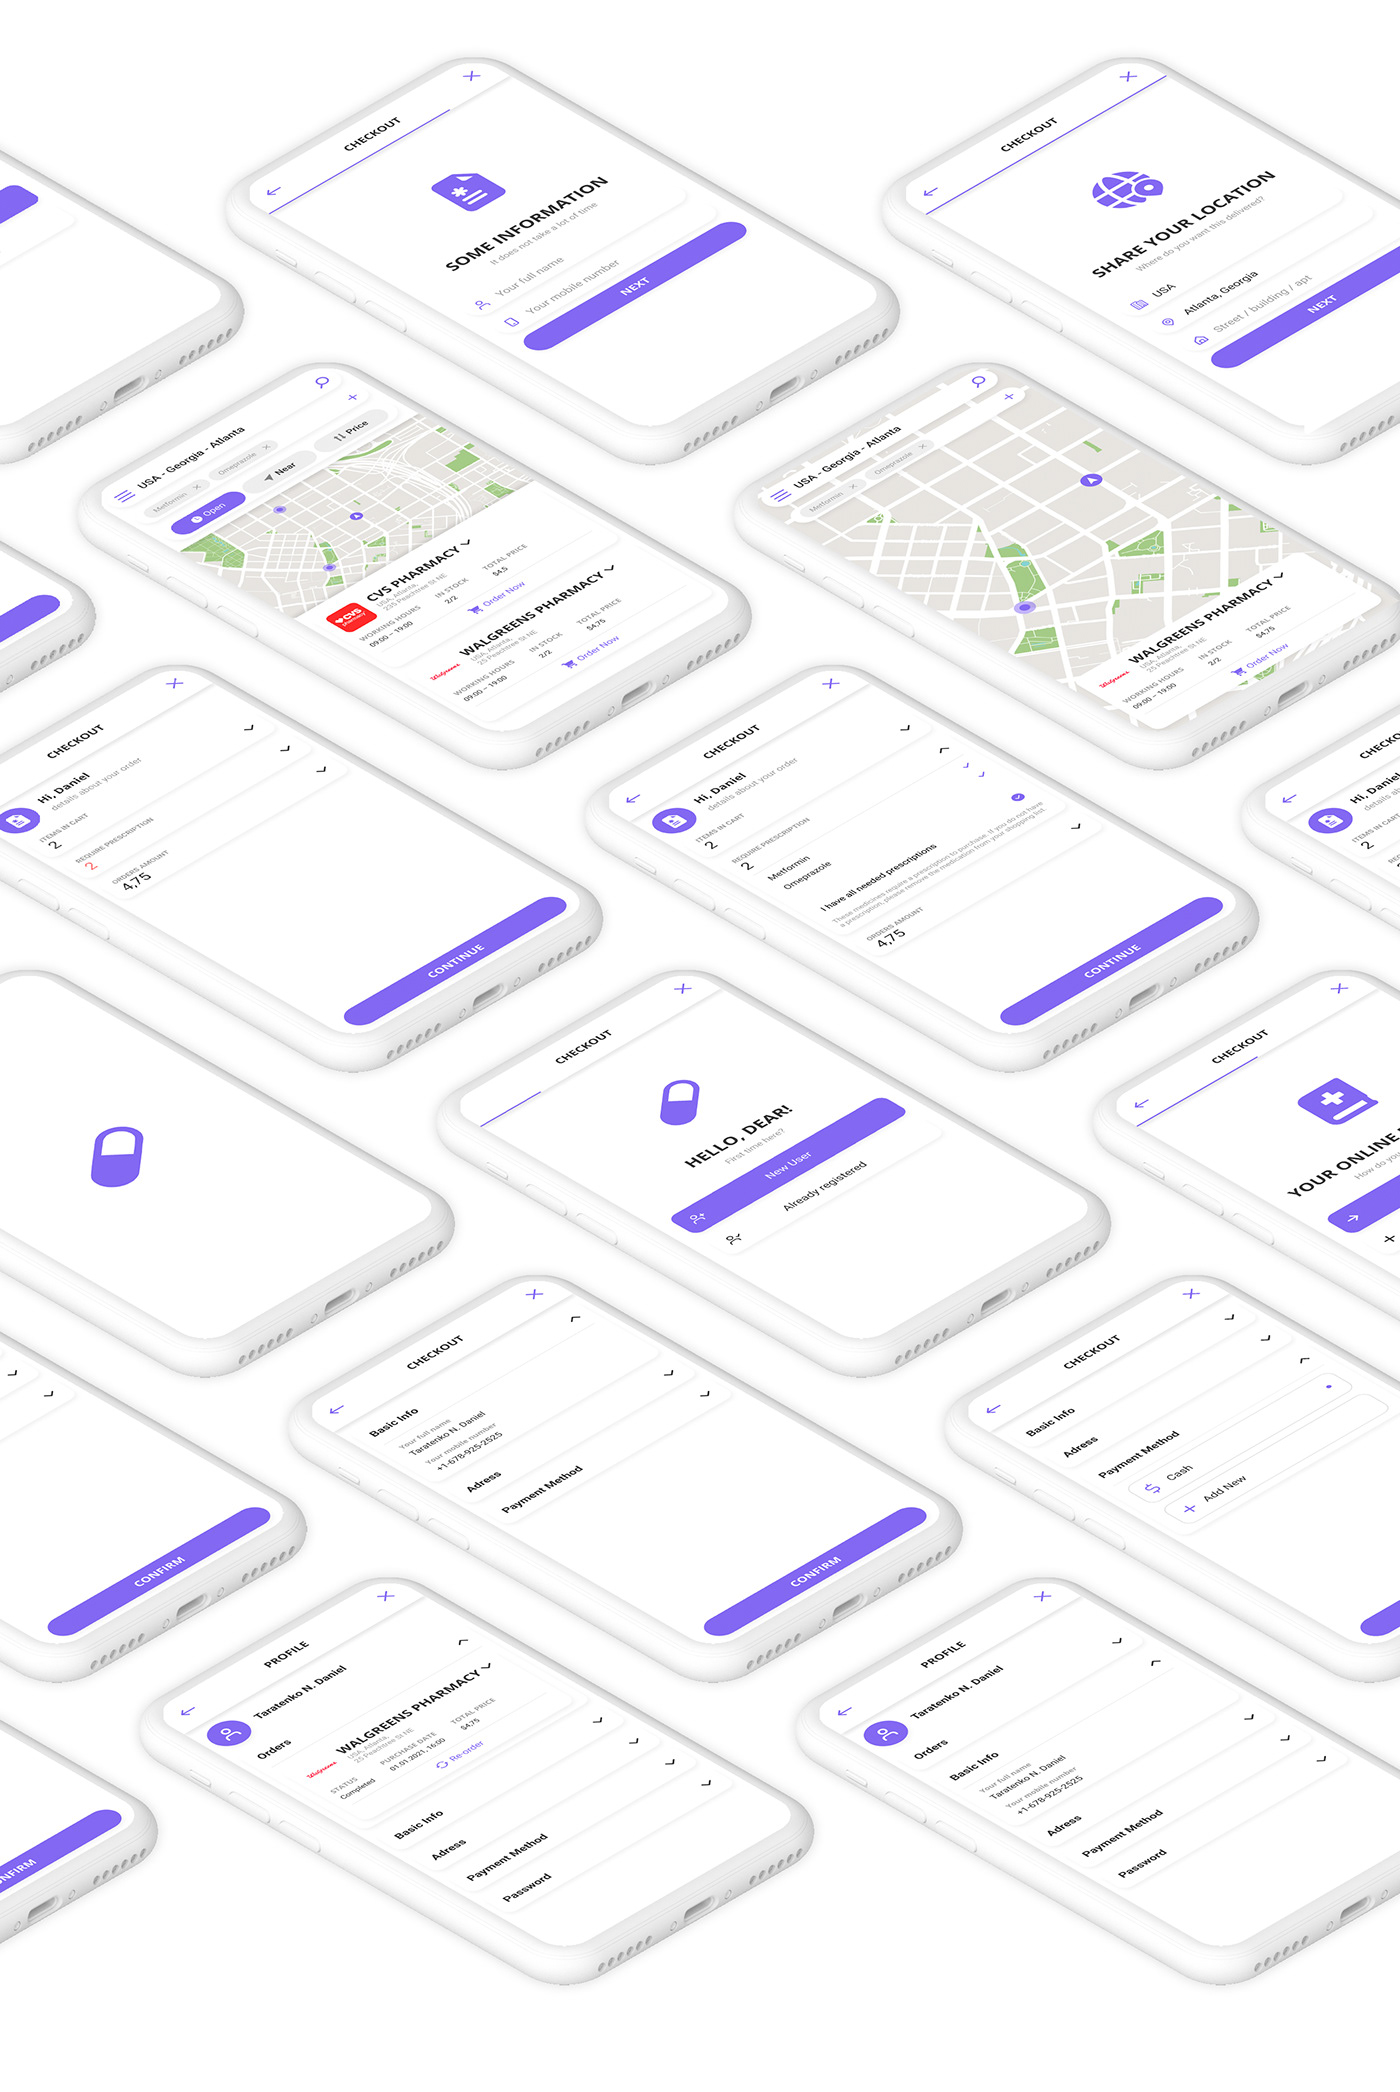 app clear design trends Drugs Interface Mobile app navigation UI ux Web Design 